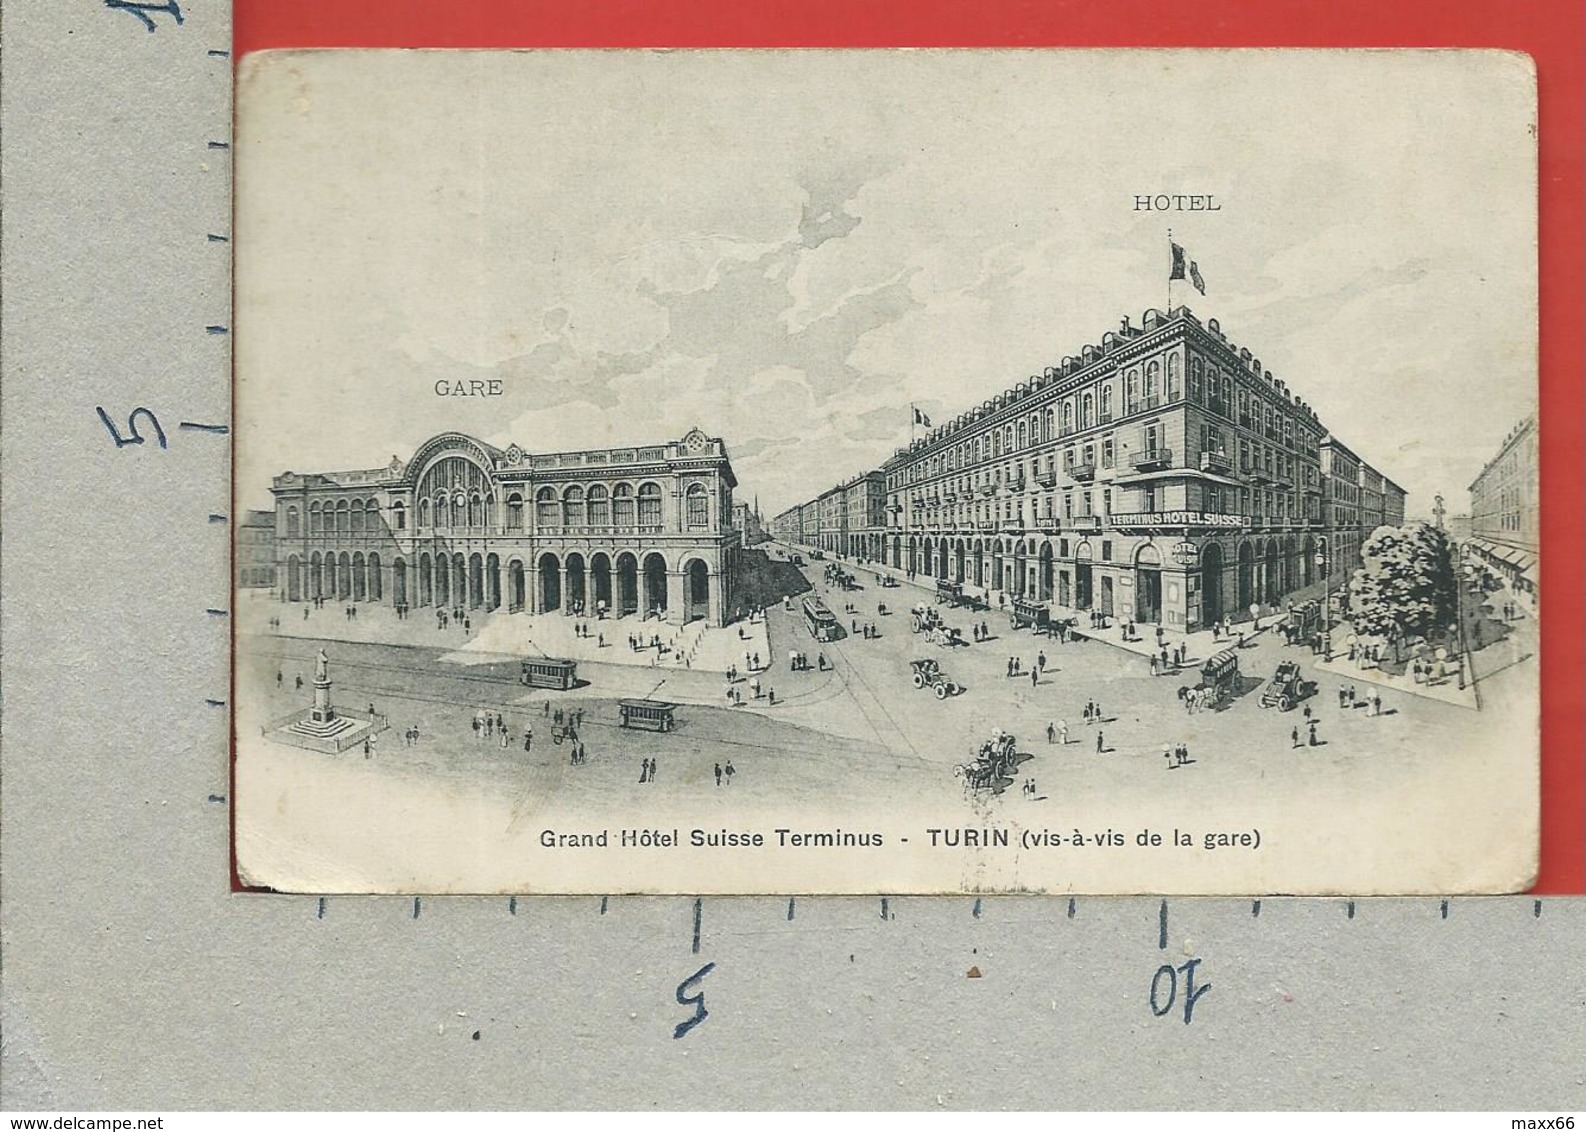 CARTOLINA VG ITALIA - Grand Hotel Suisse Terminus - TORINO TURIN - Vis A Vis De La Gare - 9 X 14 - 1911 - Cafés, Hôtels & Restaurants